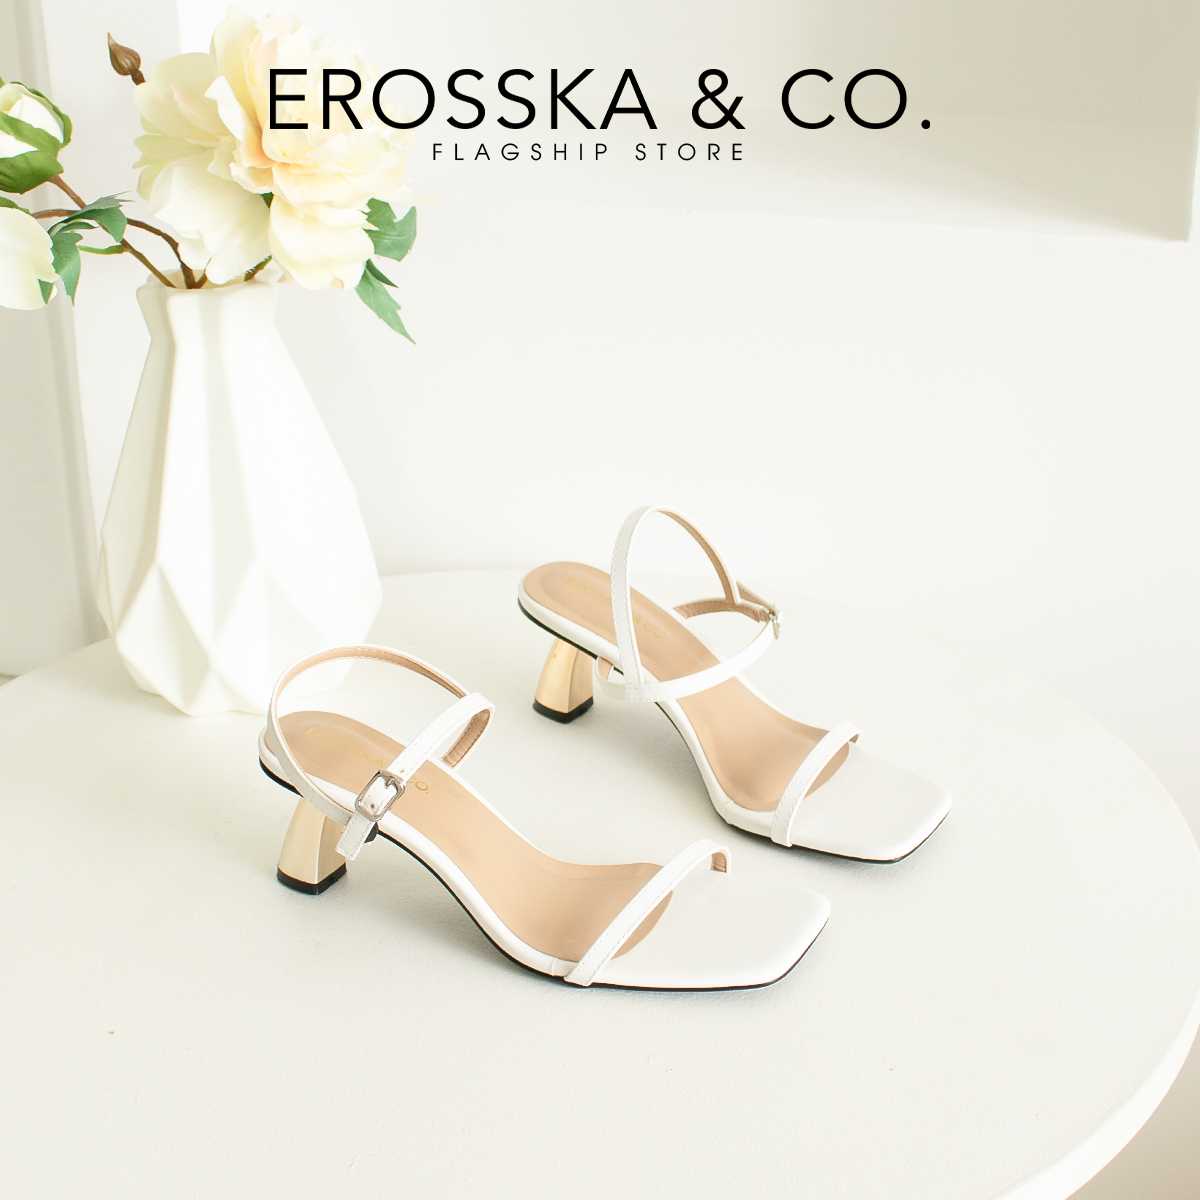 Erosska - Giày sandal cao gót nhọn kiểu dáng Hàn Quốc cao 5cm màu trắng _ EB046